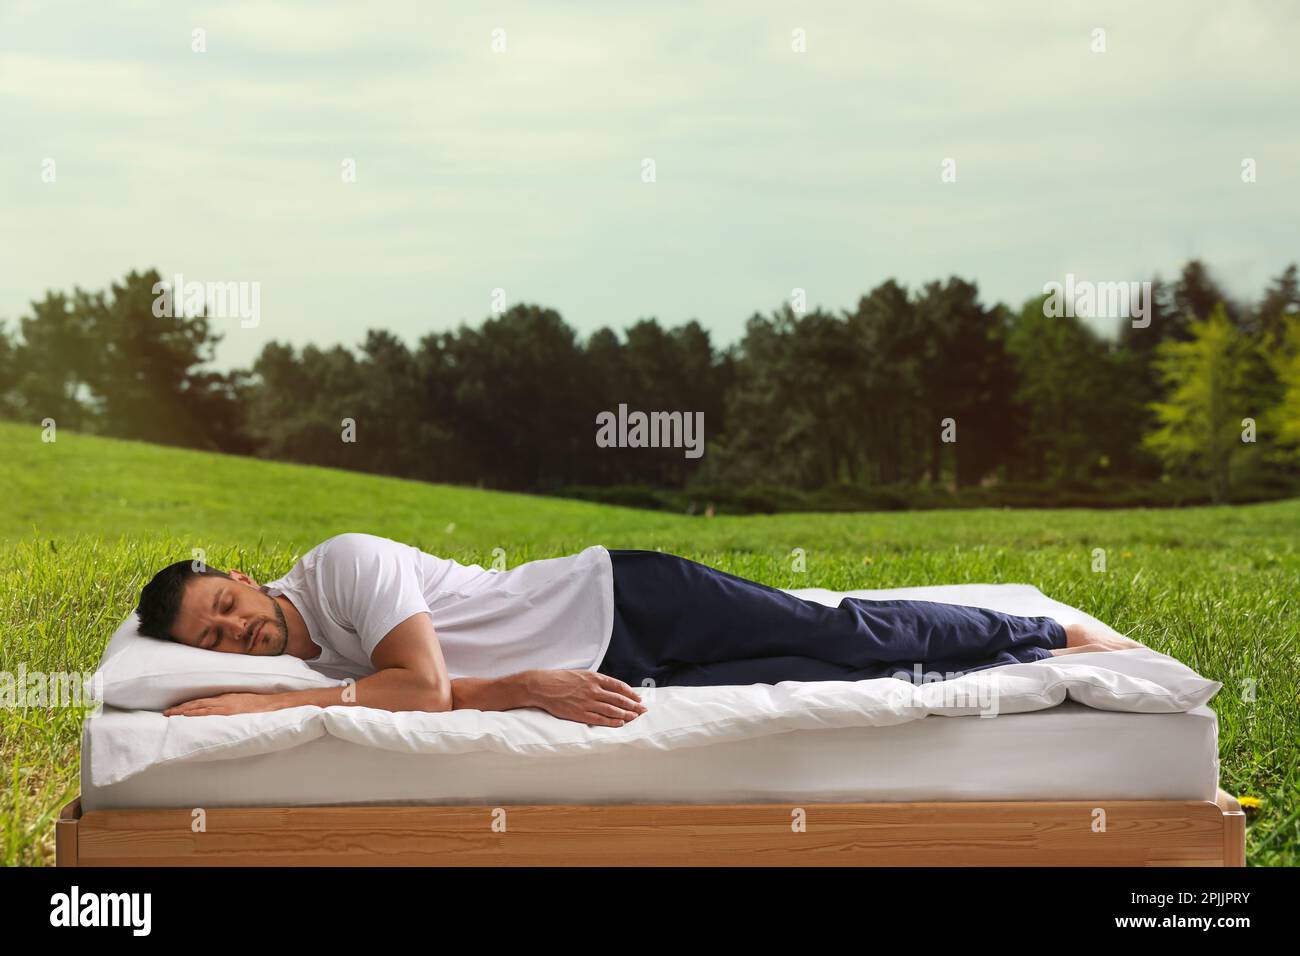 Uomo che dorme a letto e bella vista del prato verde sullo sfondo. Dormi bene - resta in salute Foto Stock